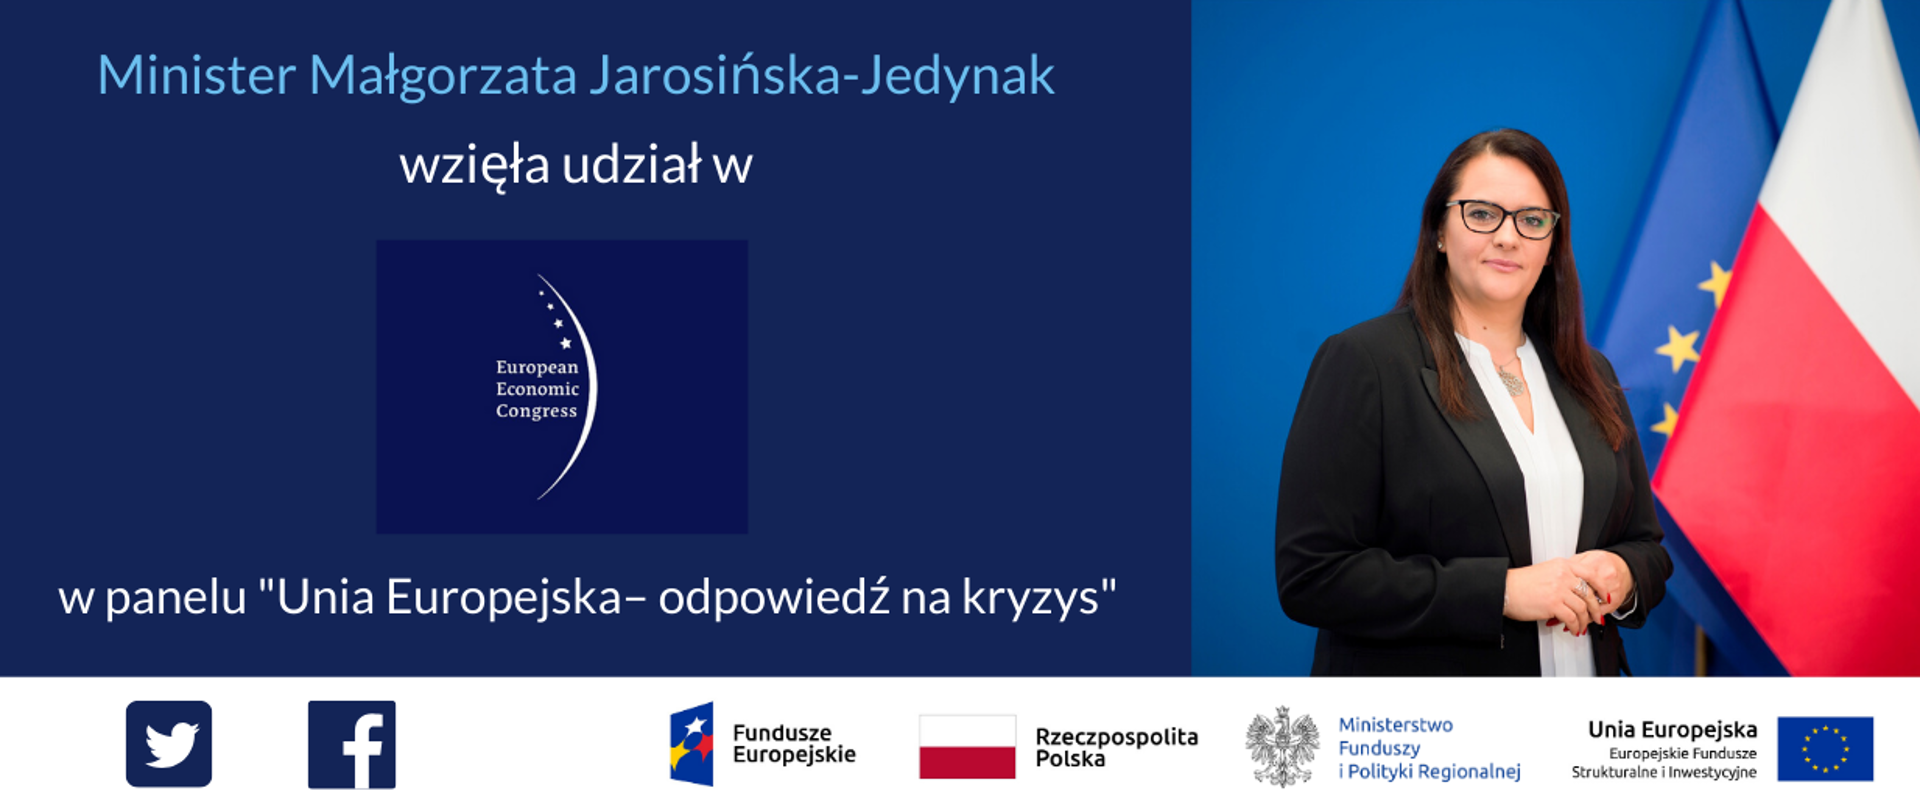 Od lewej napis: Minister Małgorzata Jarosińska-Jedynak wzięła udział w panelu "Unia Europejska -odpowiedź na kryzys". Po prawej zdjęcie minister. 